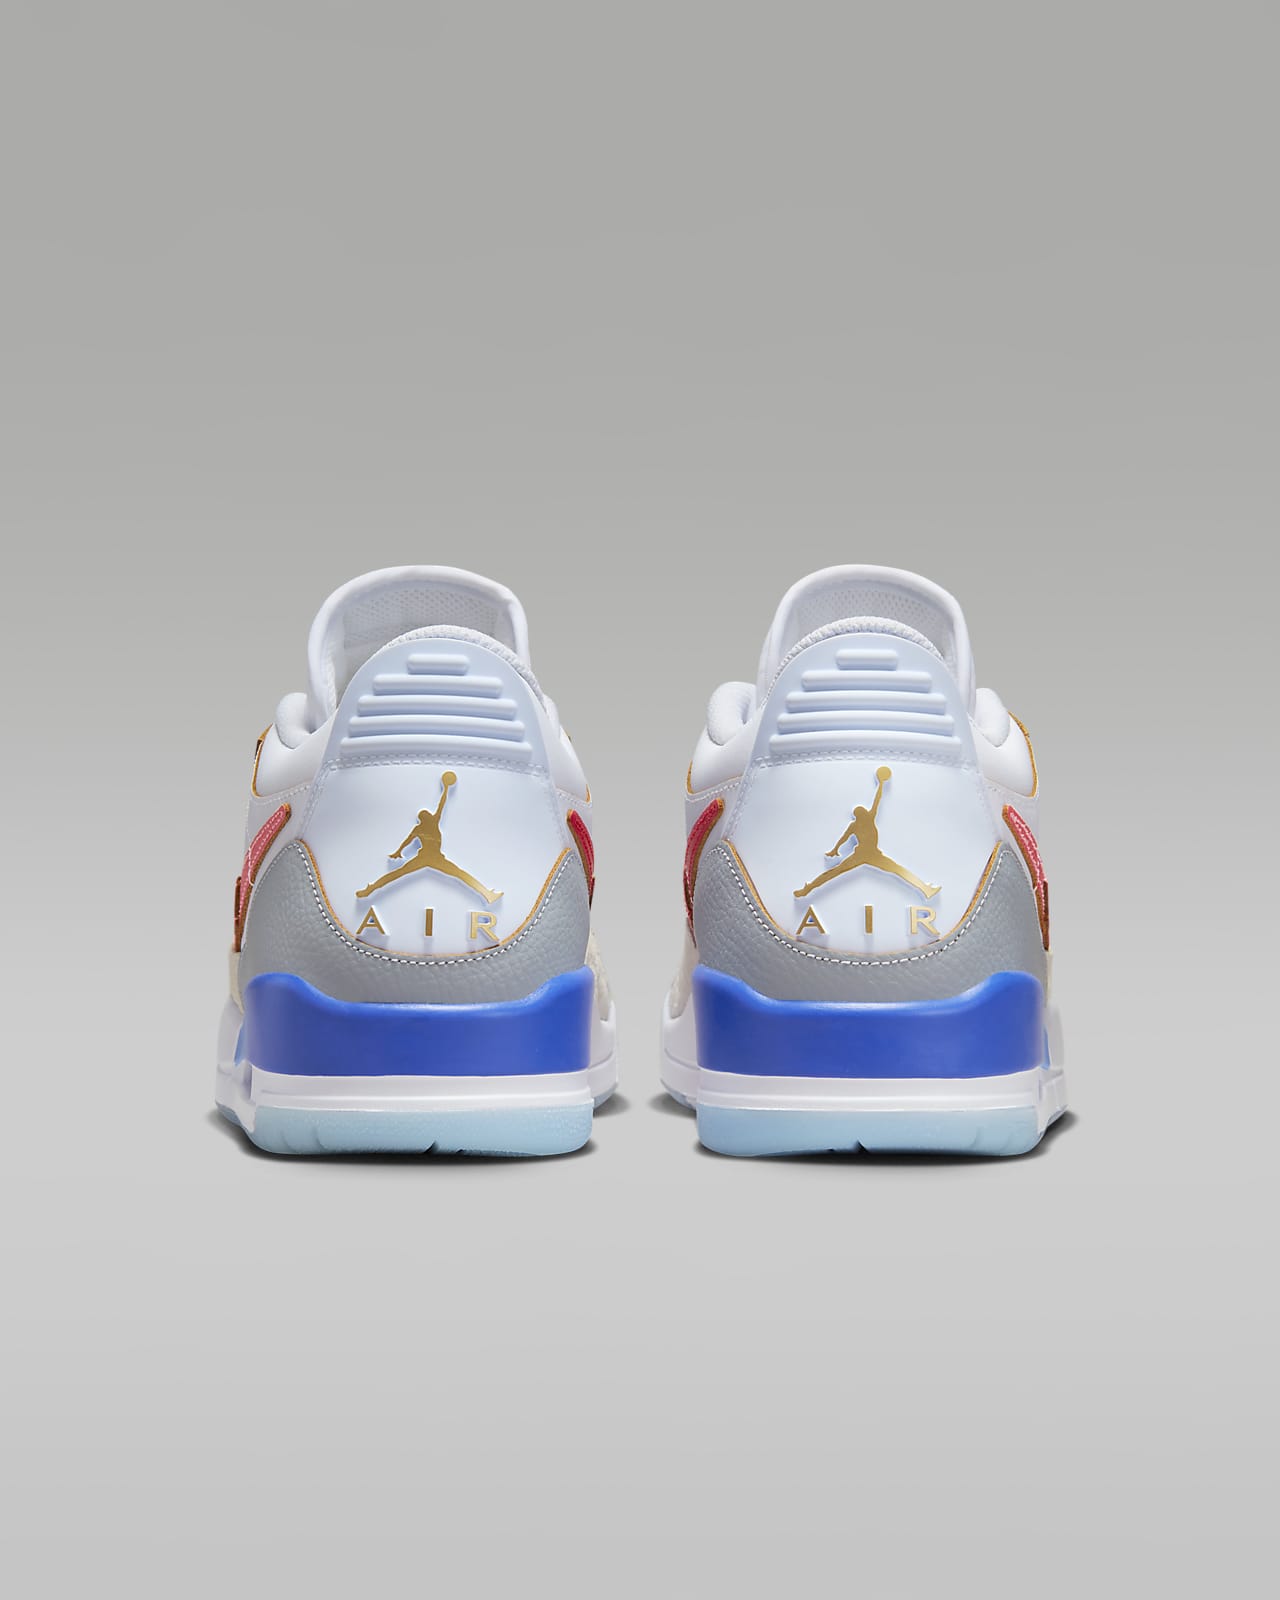 egoisme Odds Shuraba Air Jordan Legacy 312 Low Men's Shoes. Nike.com